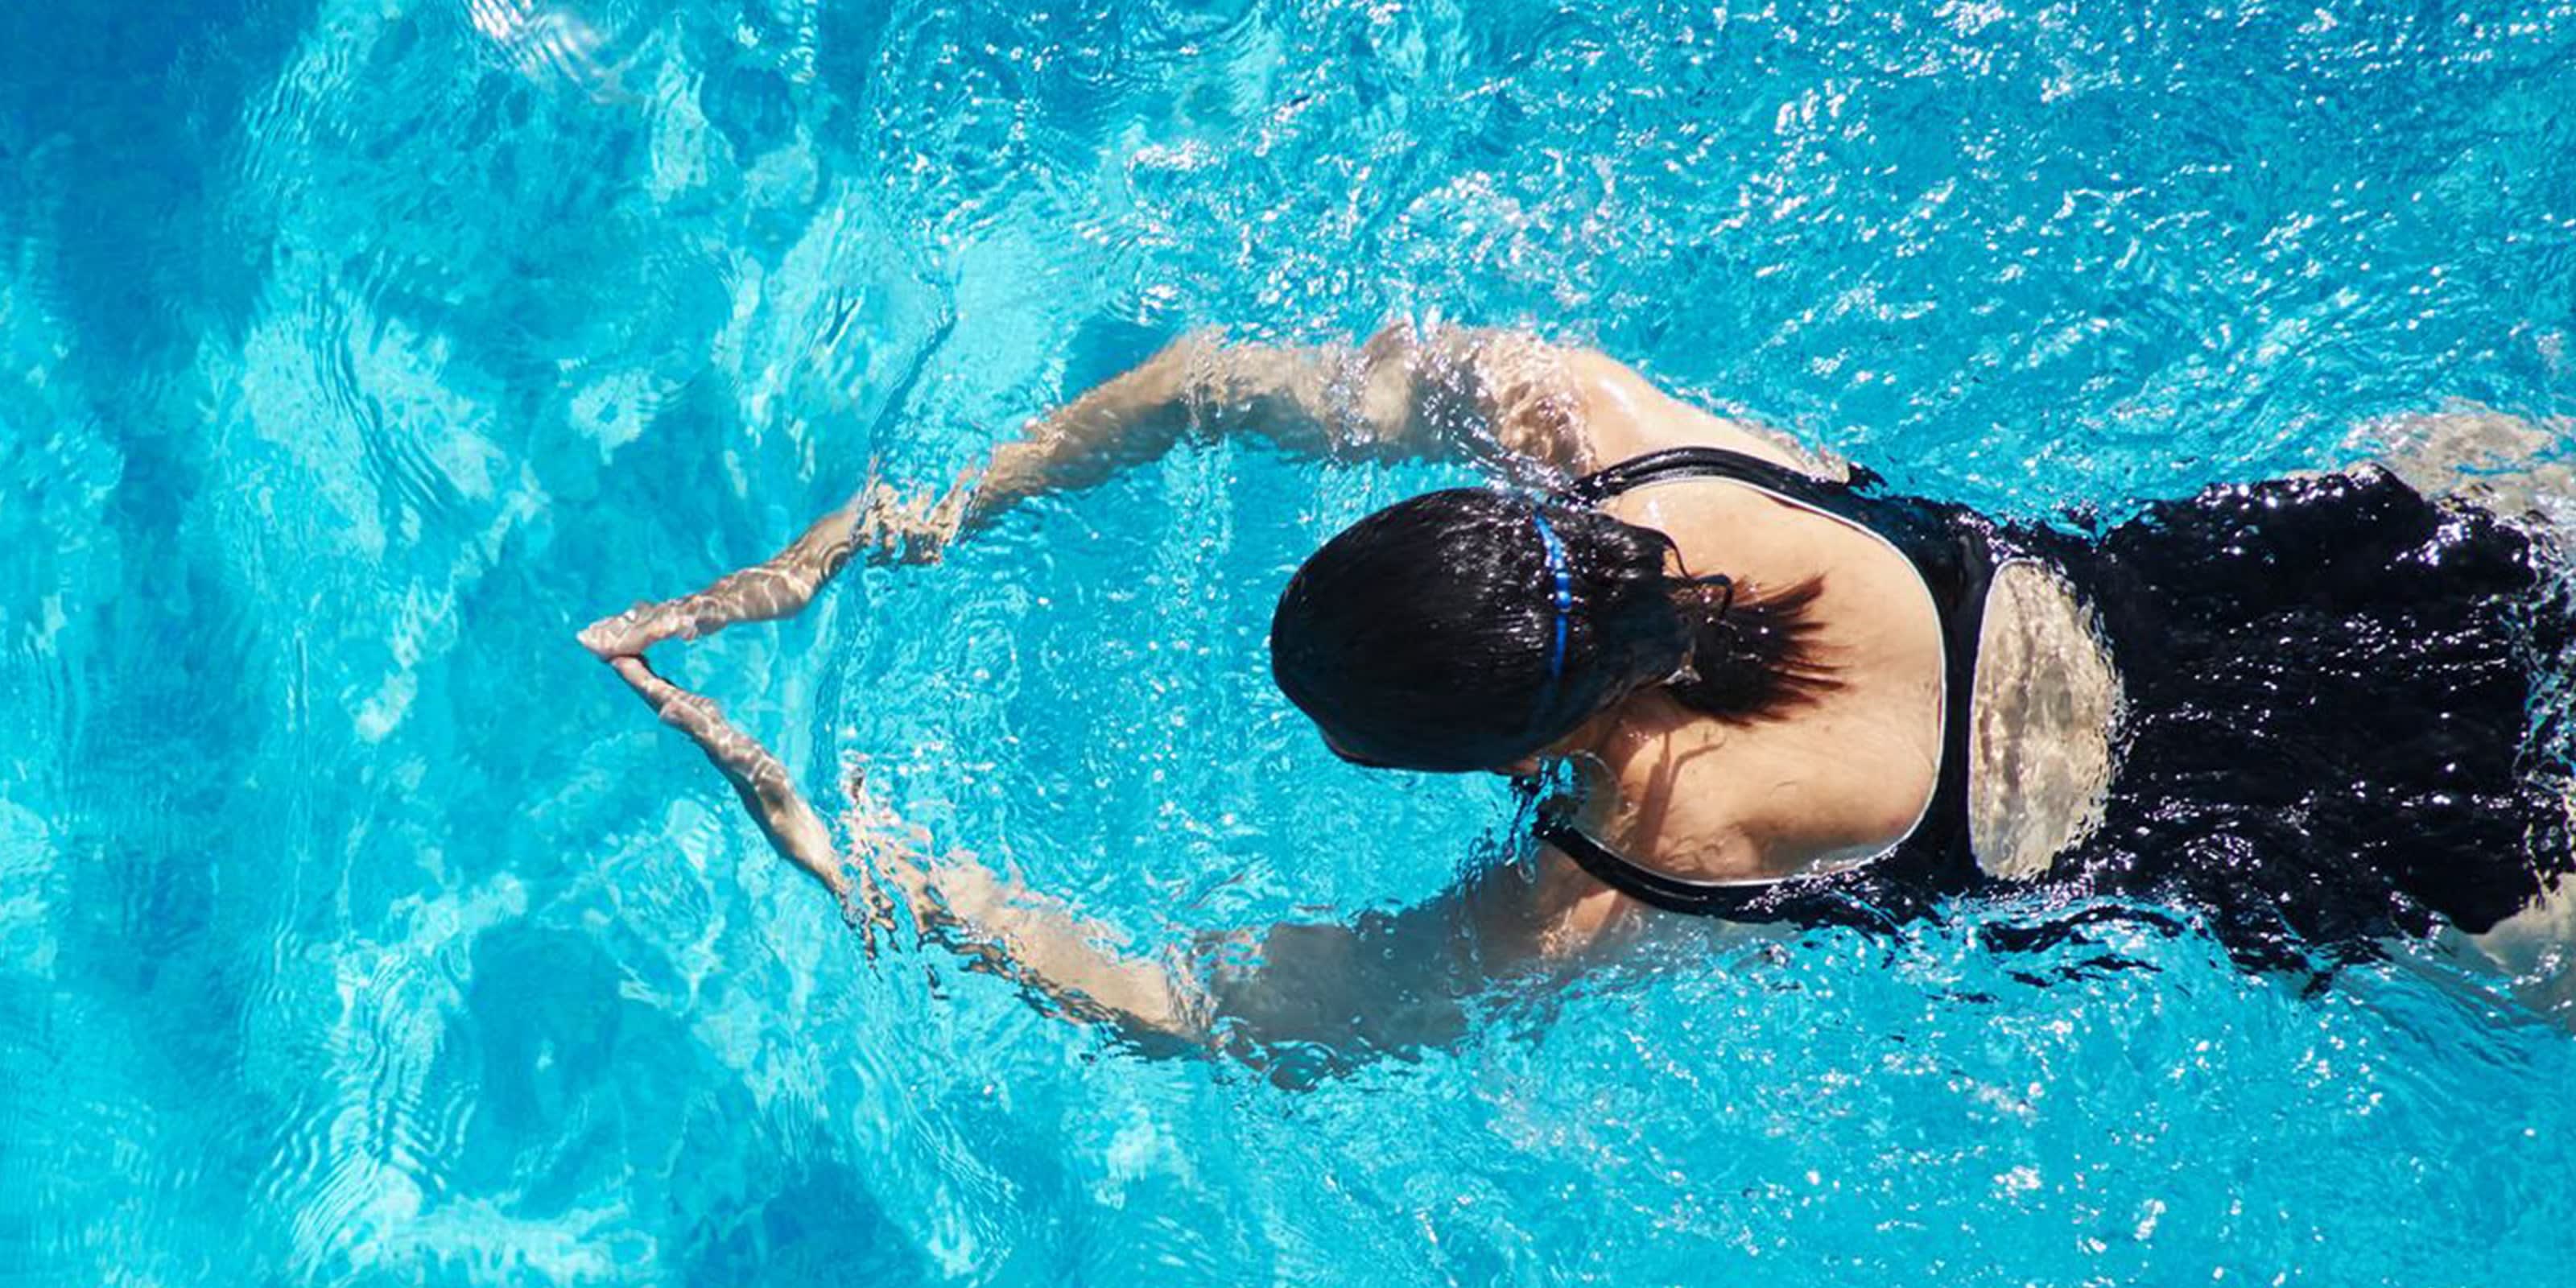 Frau in Badeanzug trainiert Brustschwimmen.